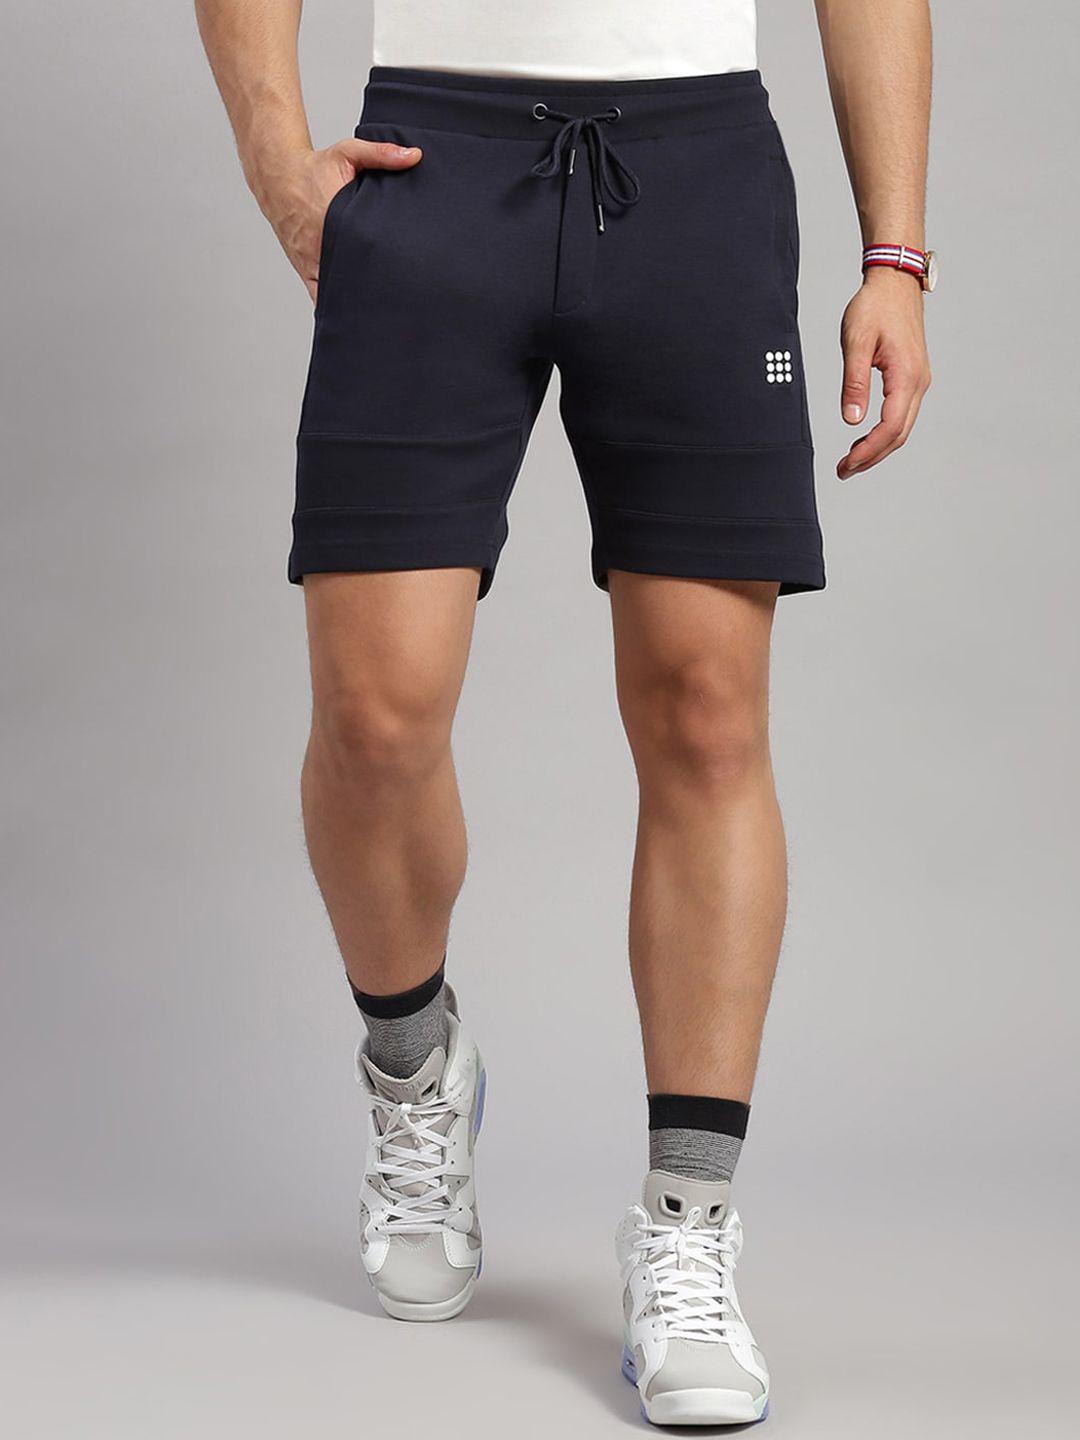 rock.it men mid rise cotton sports shorts